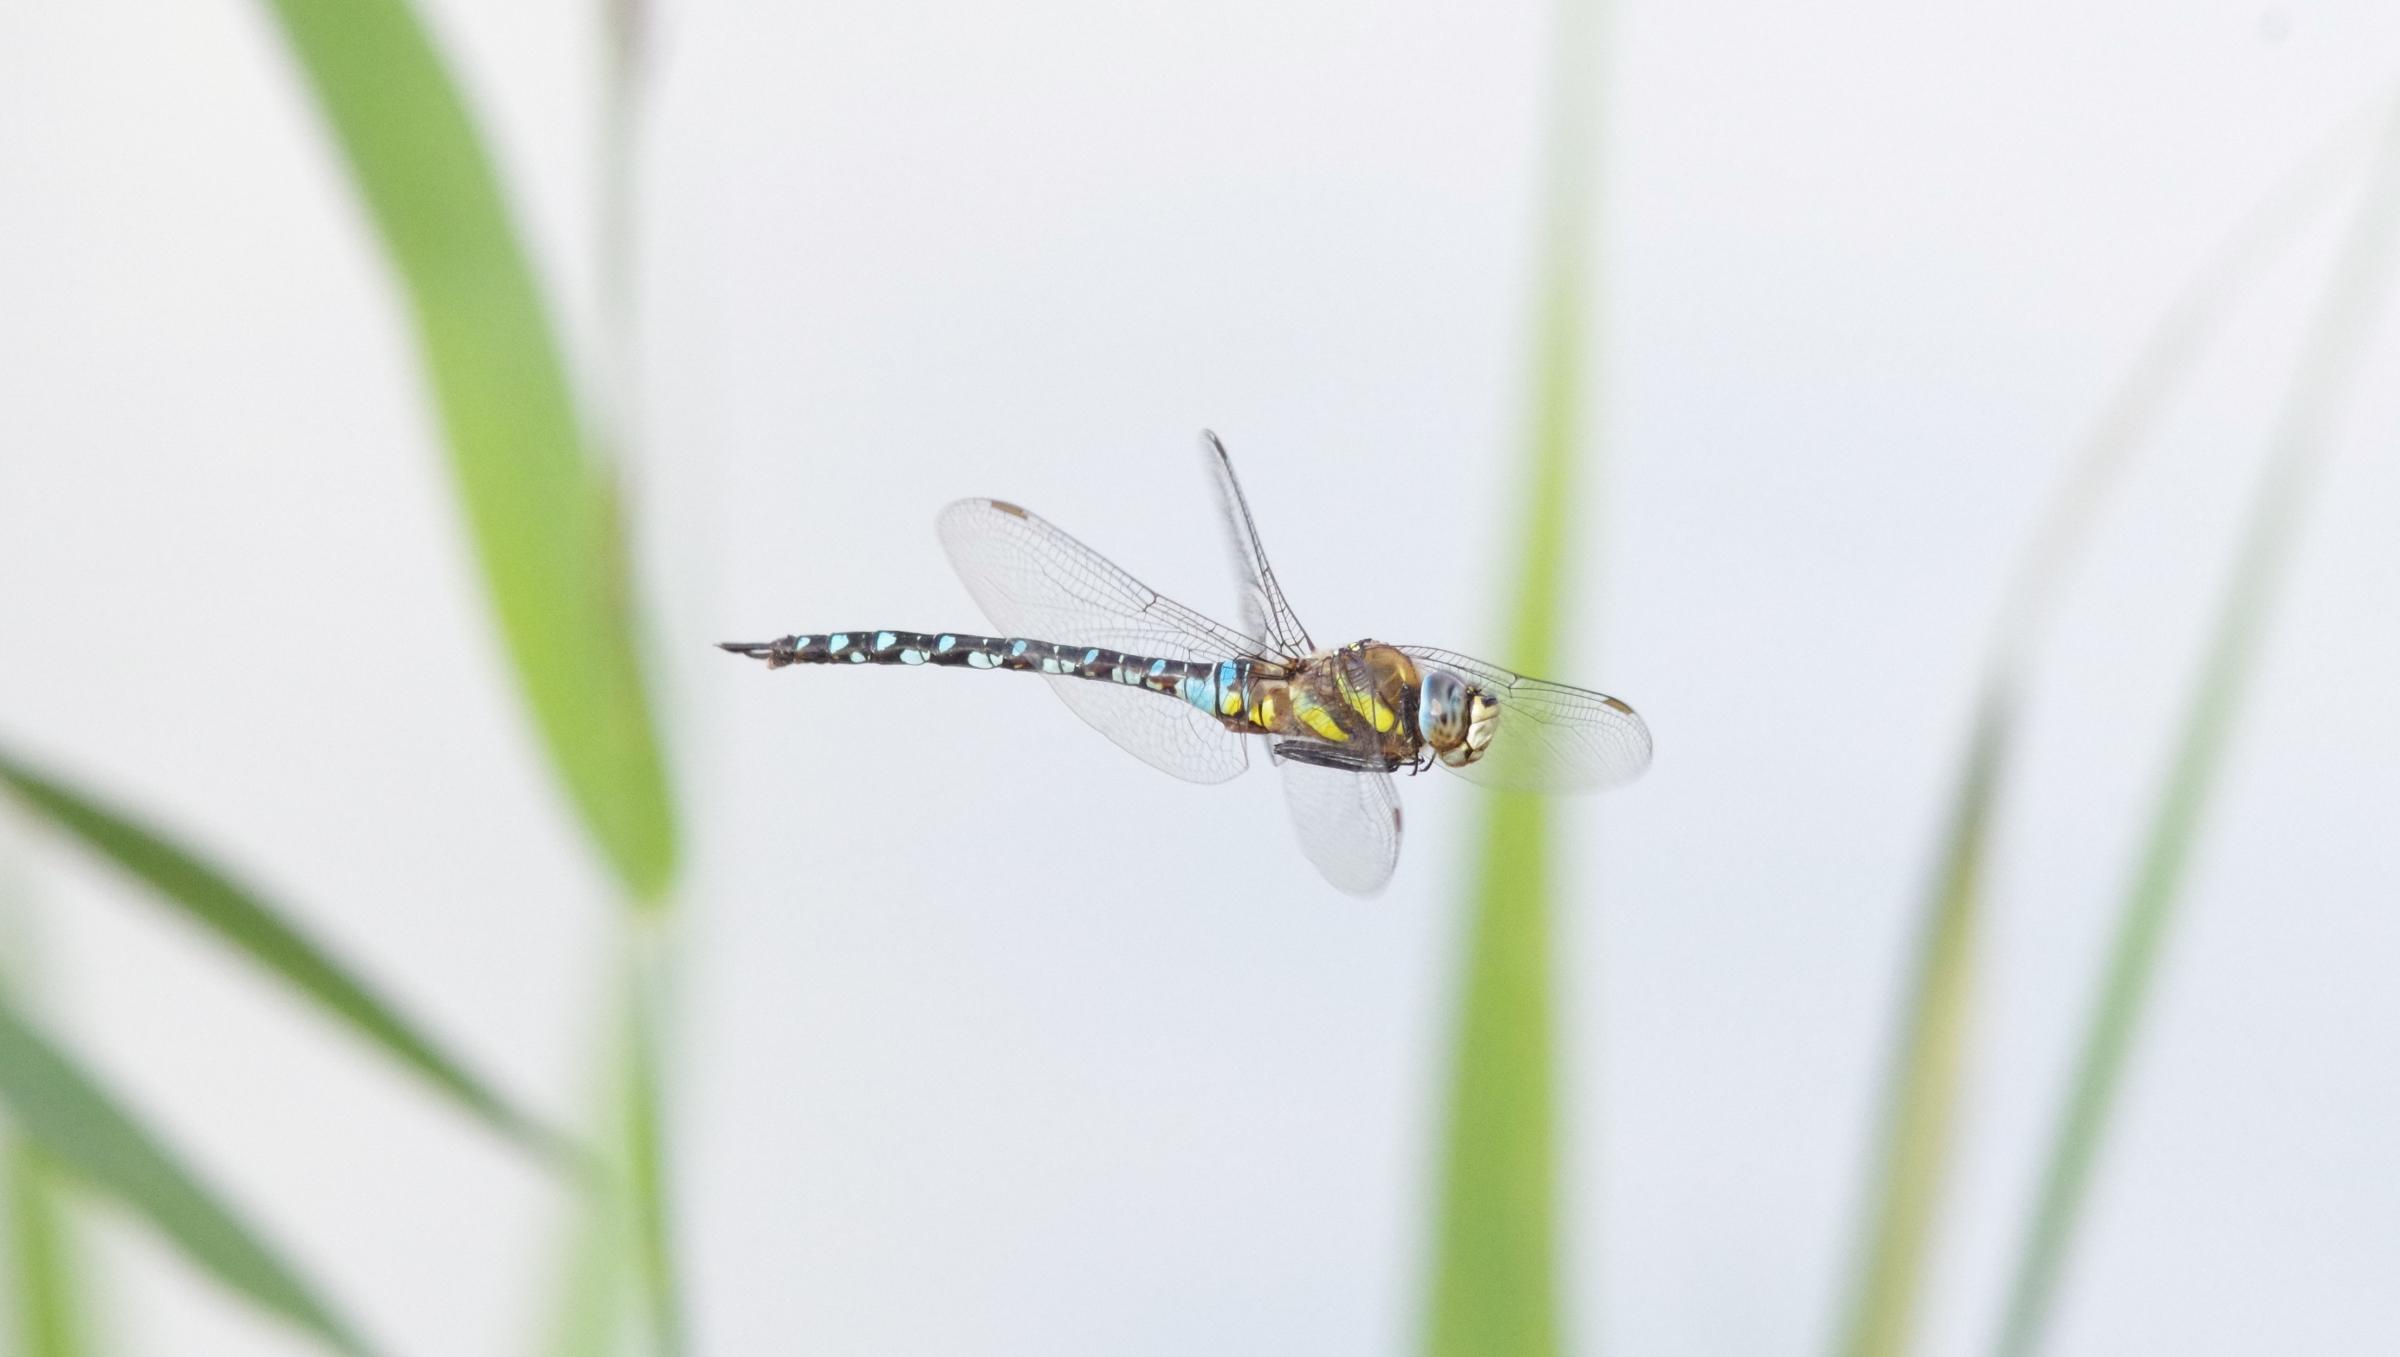 A dragonfly mid flight